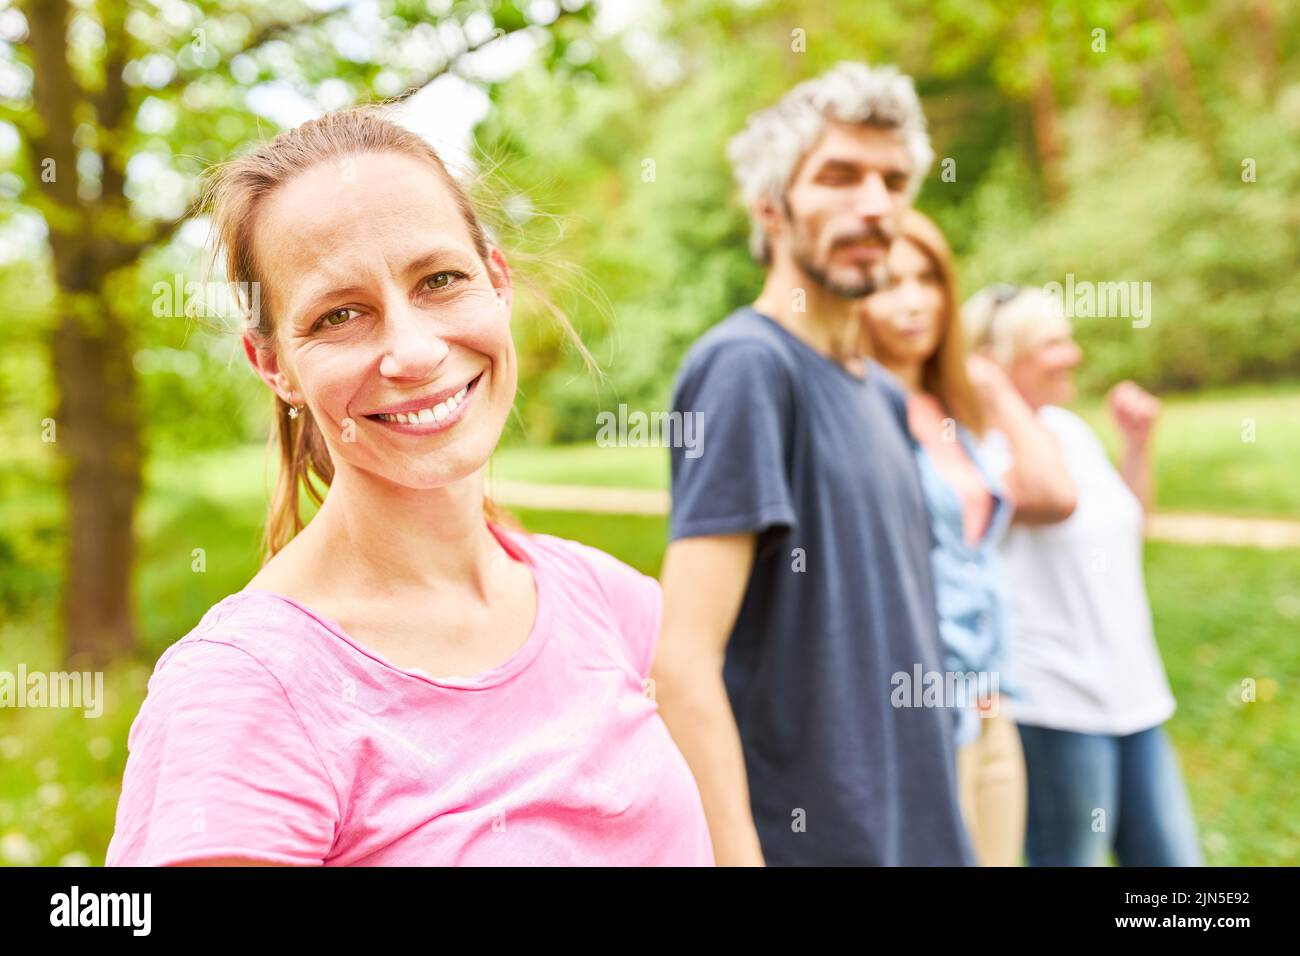 Lächelnde junge Frau und ihre Freunde oder Familie machen einen Ausflug in die Natur Stockfoto